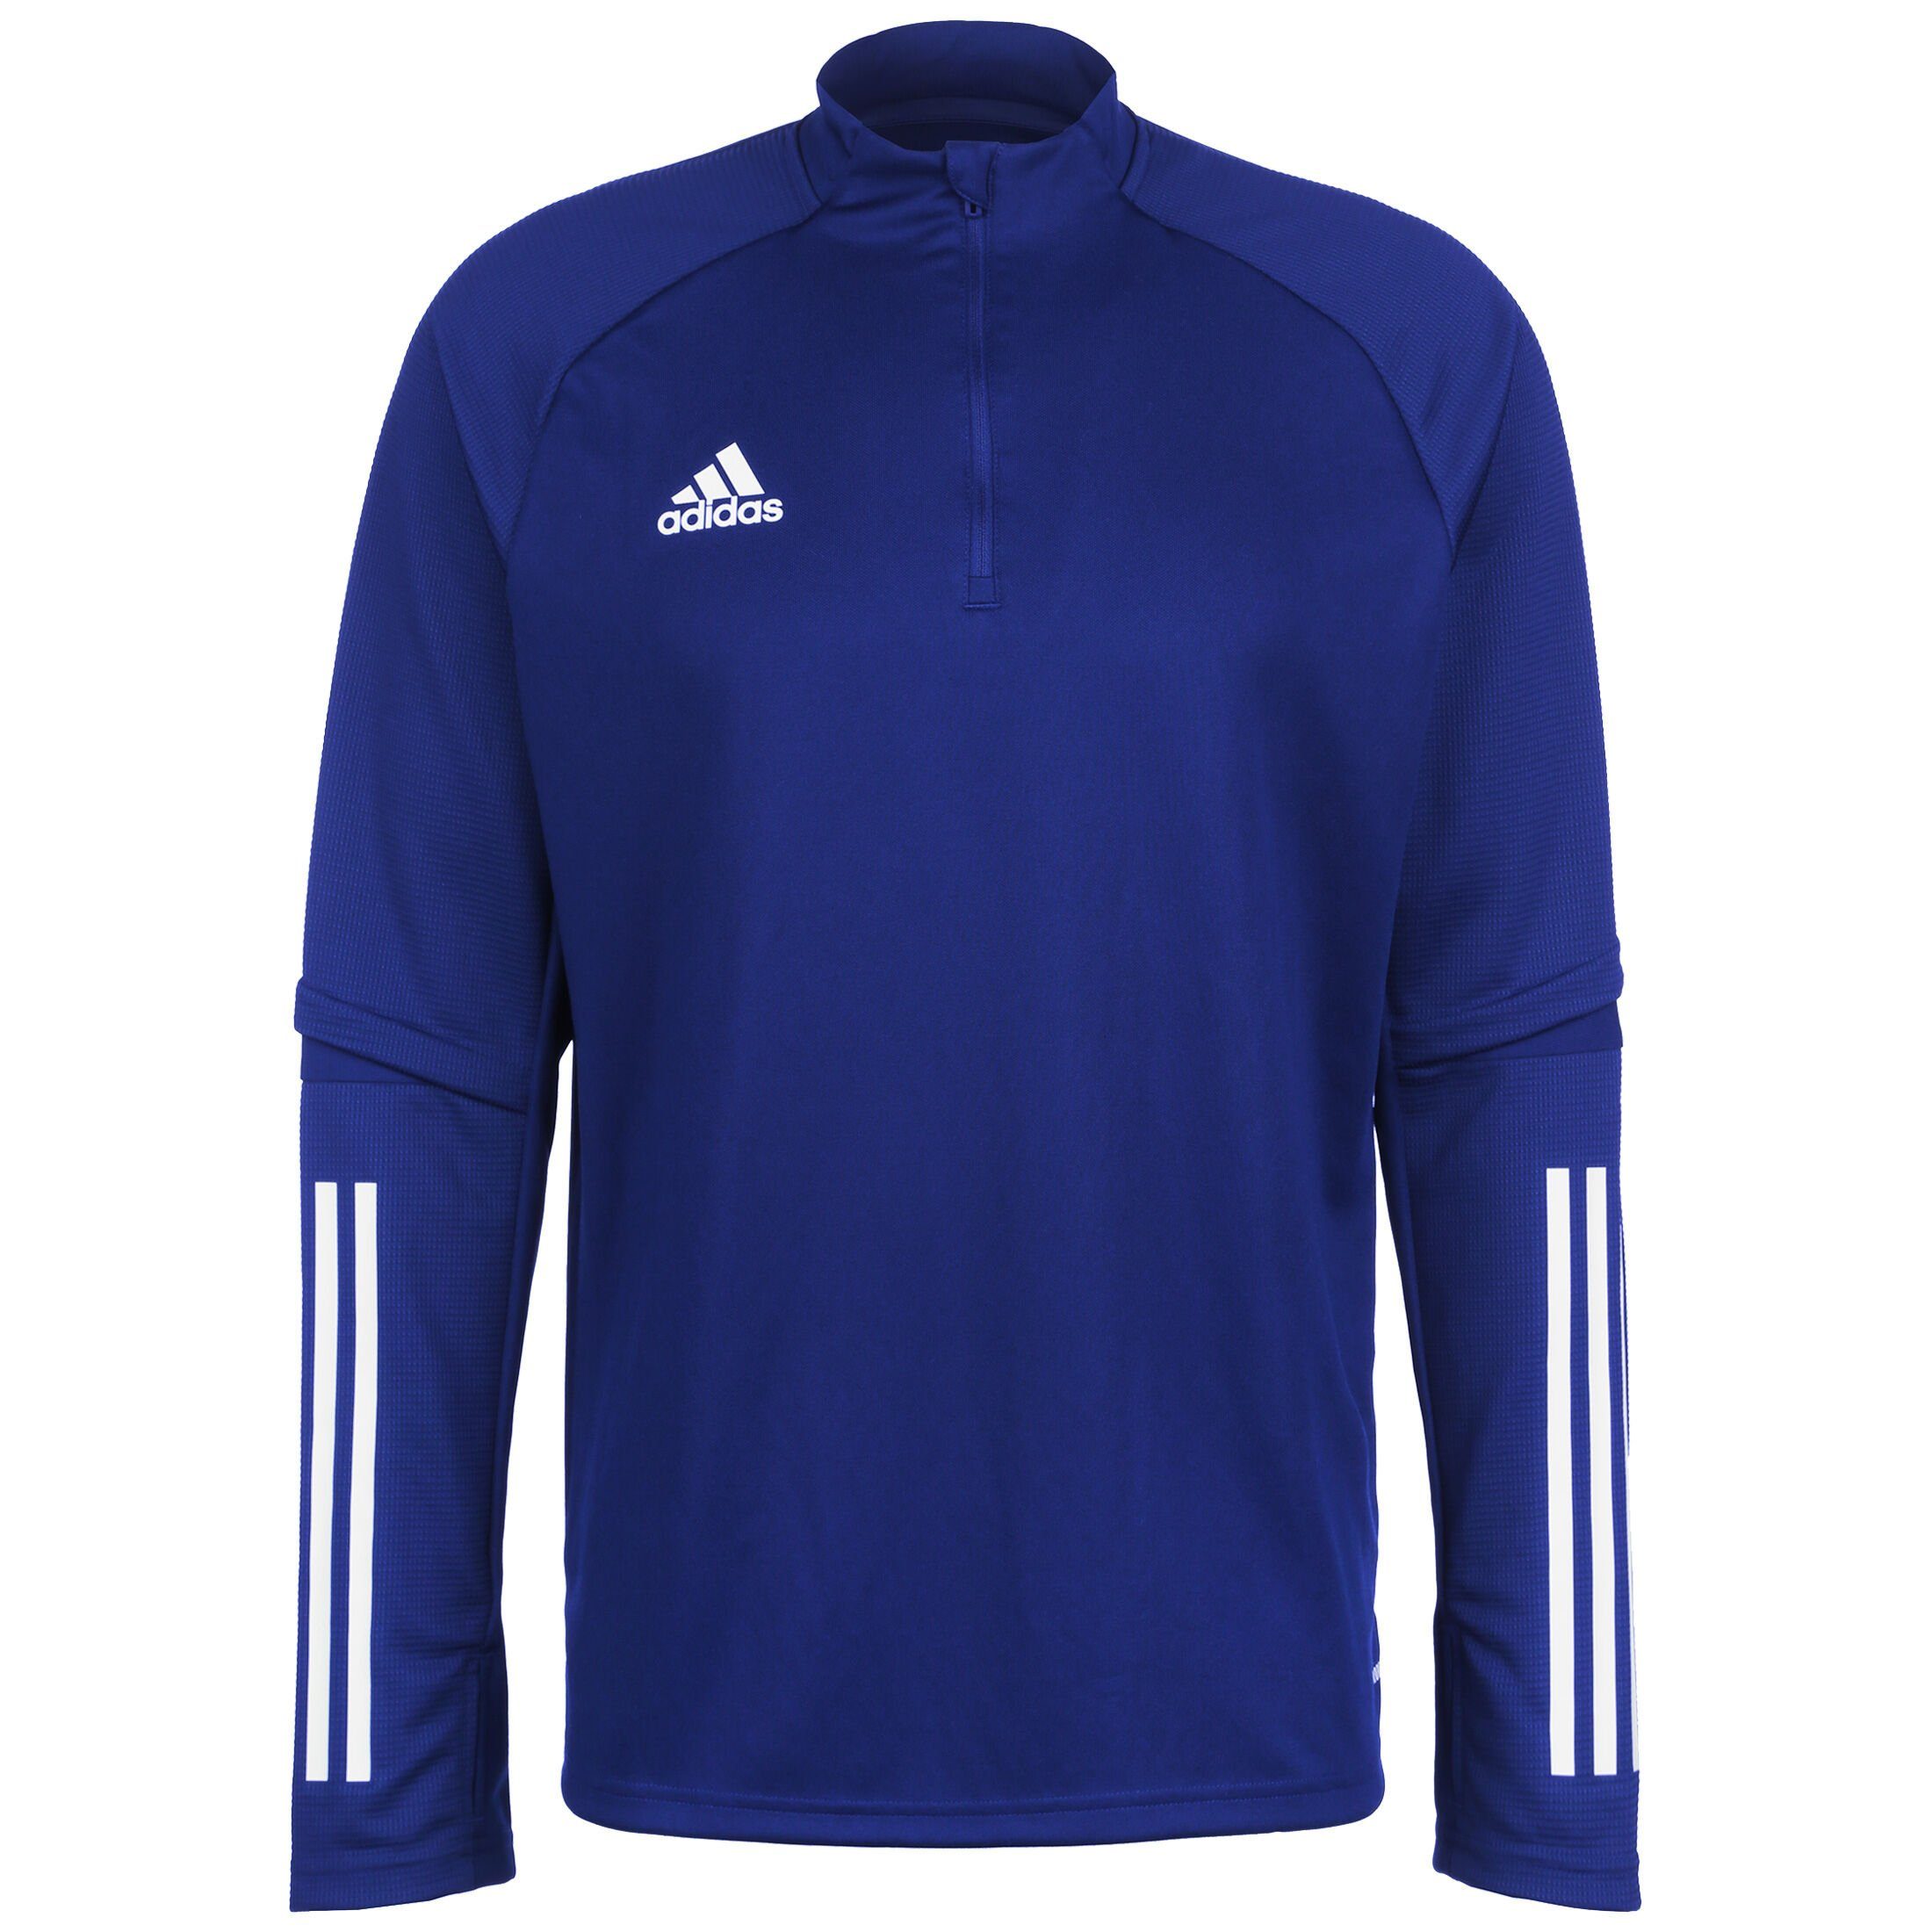 adidas Performance Sweatshirt Condivo / Herren Trainingssweat weiß blau 20